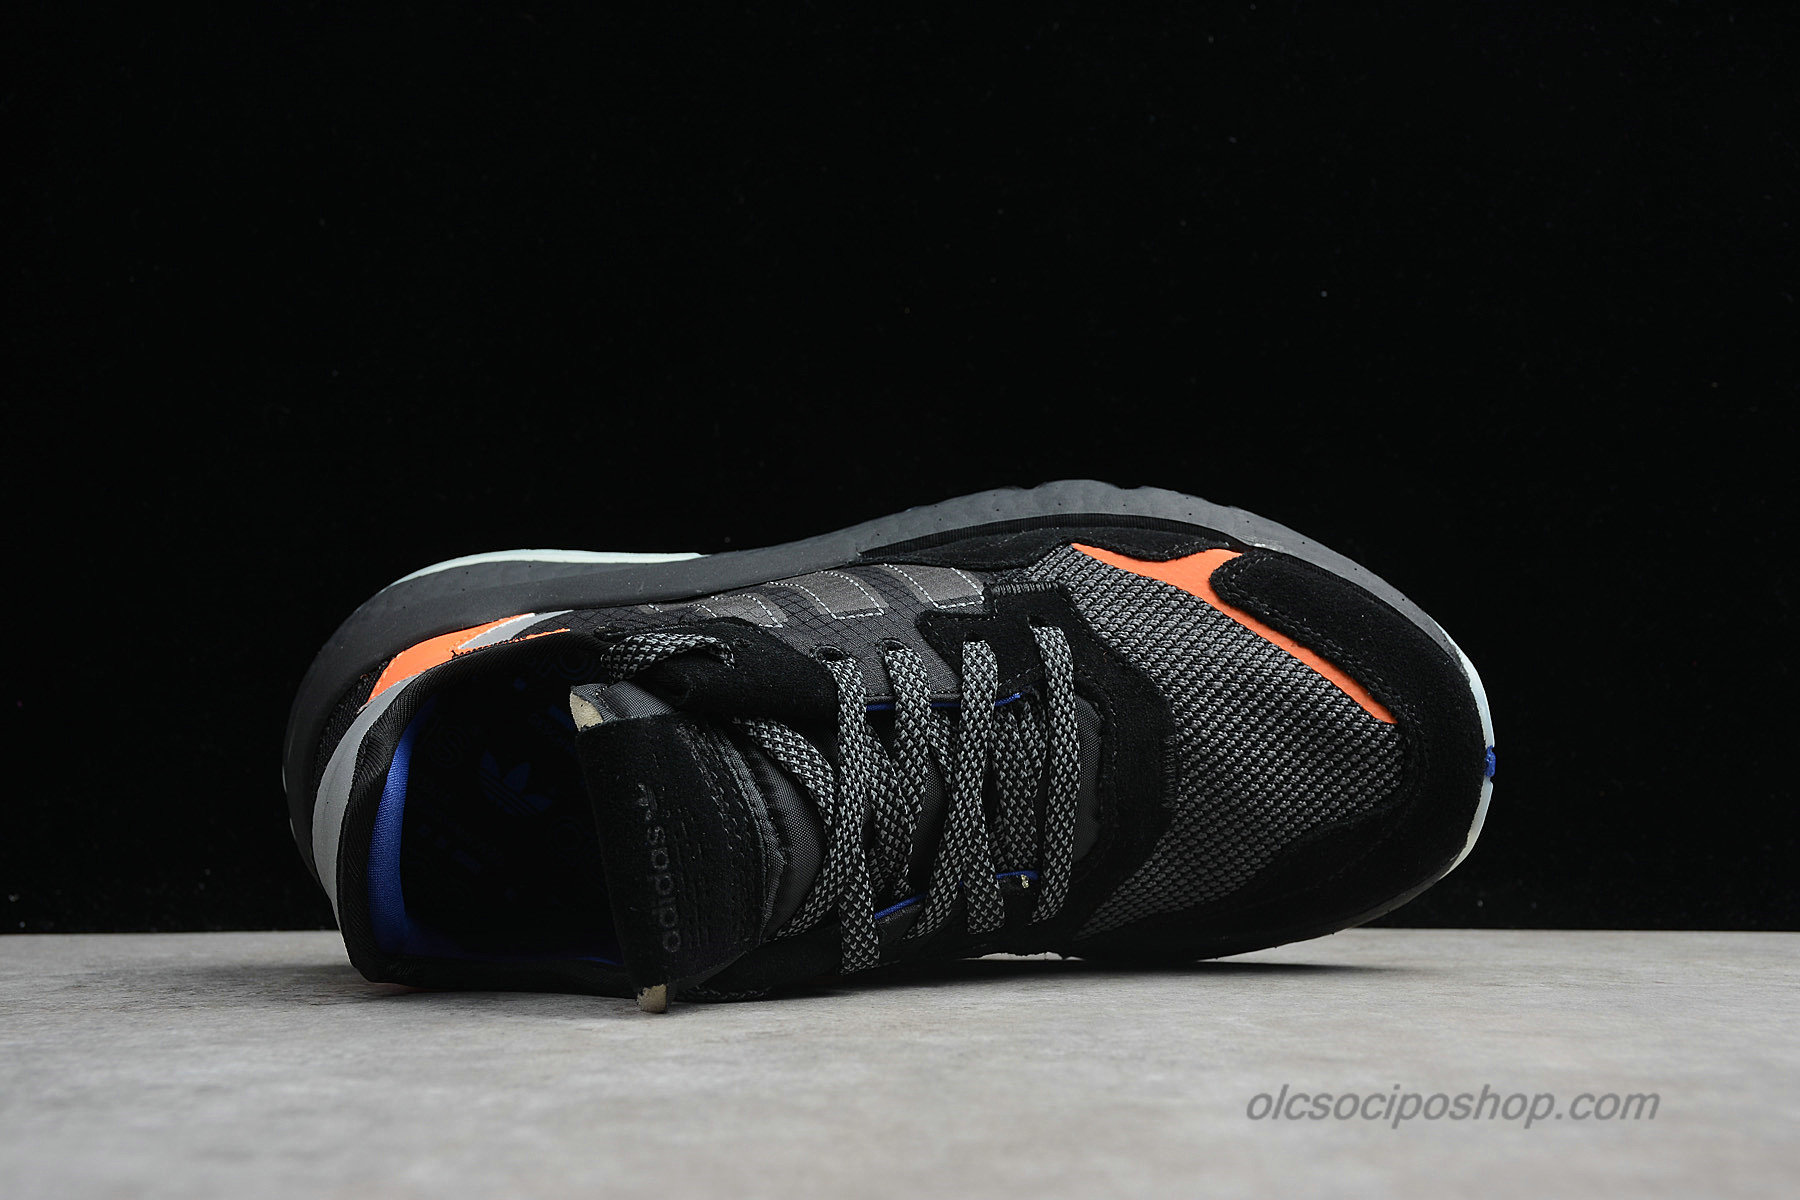 Adidas Nite Jogger 2019 Boost 3M Fekete/Narancs/Szürke Cipők (CG7088) - Kattintásra bezárul